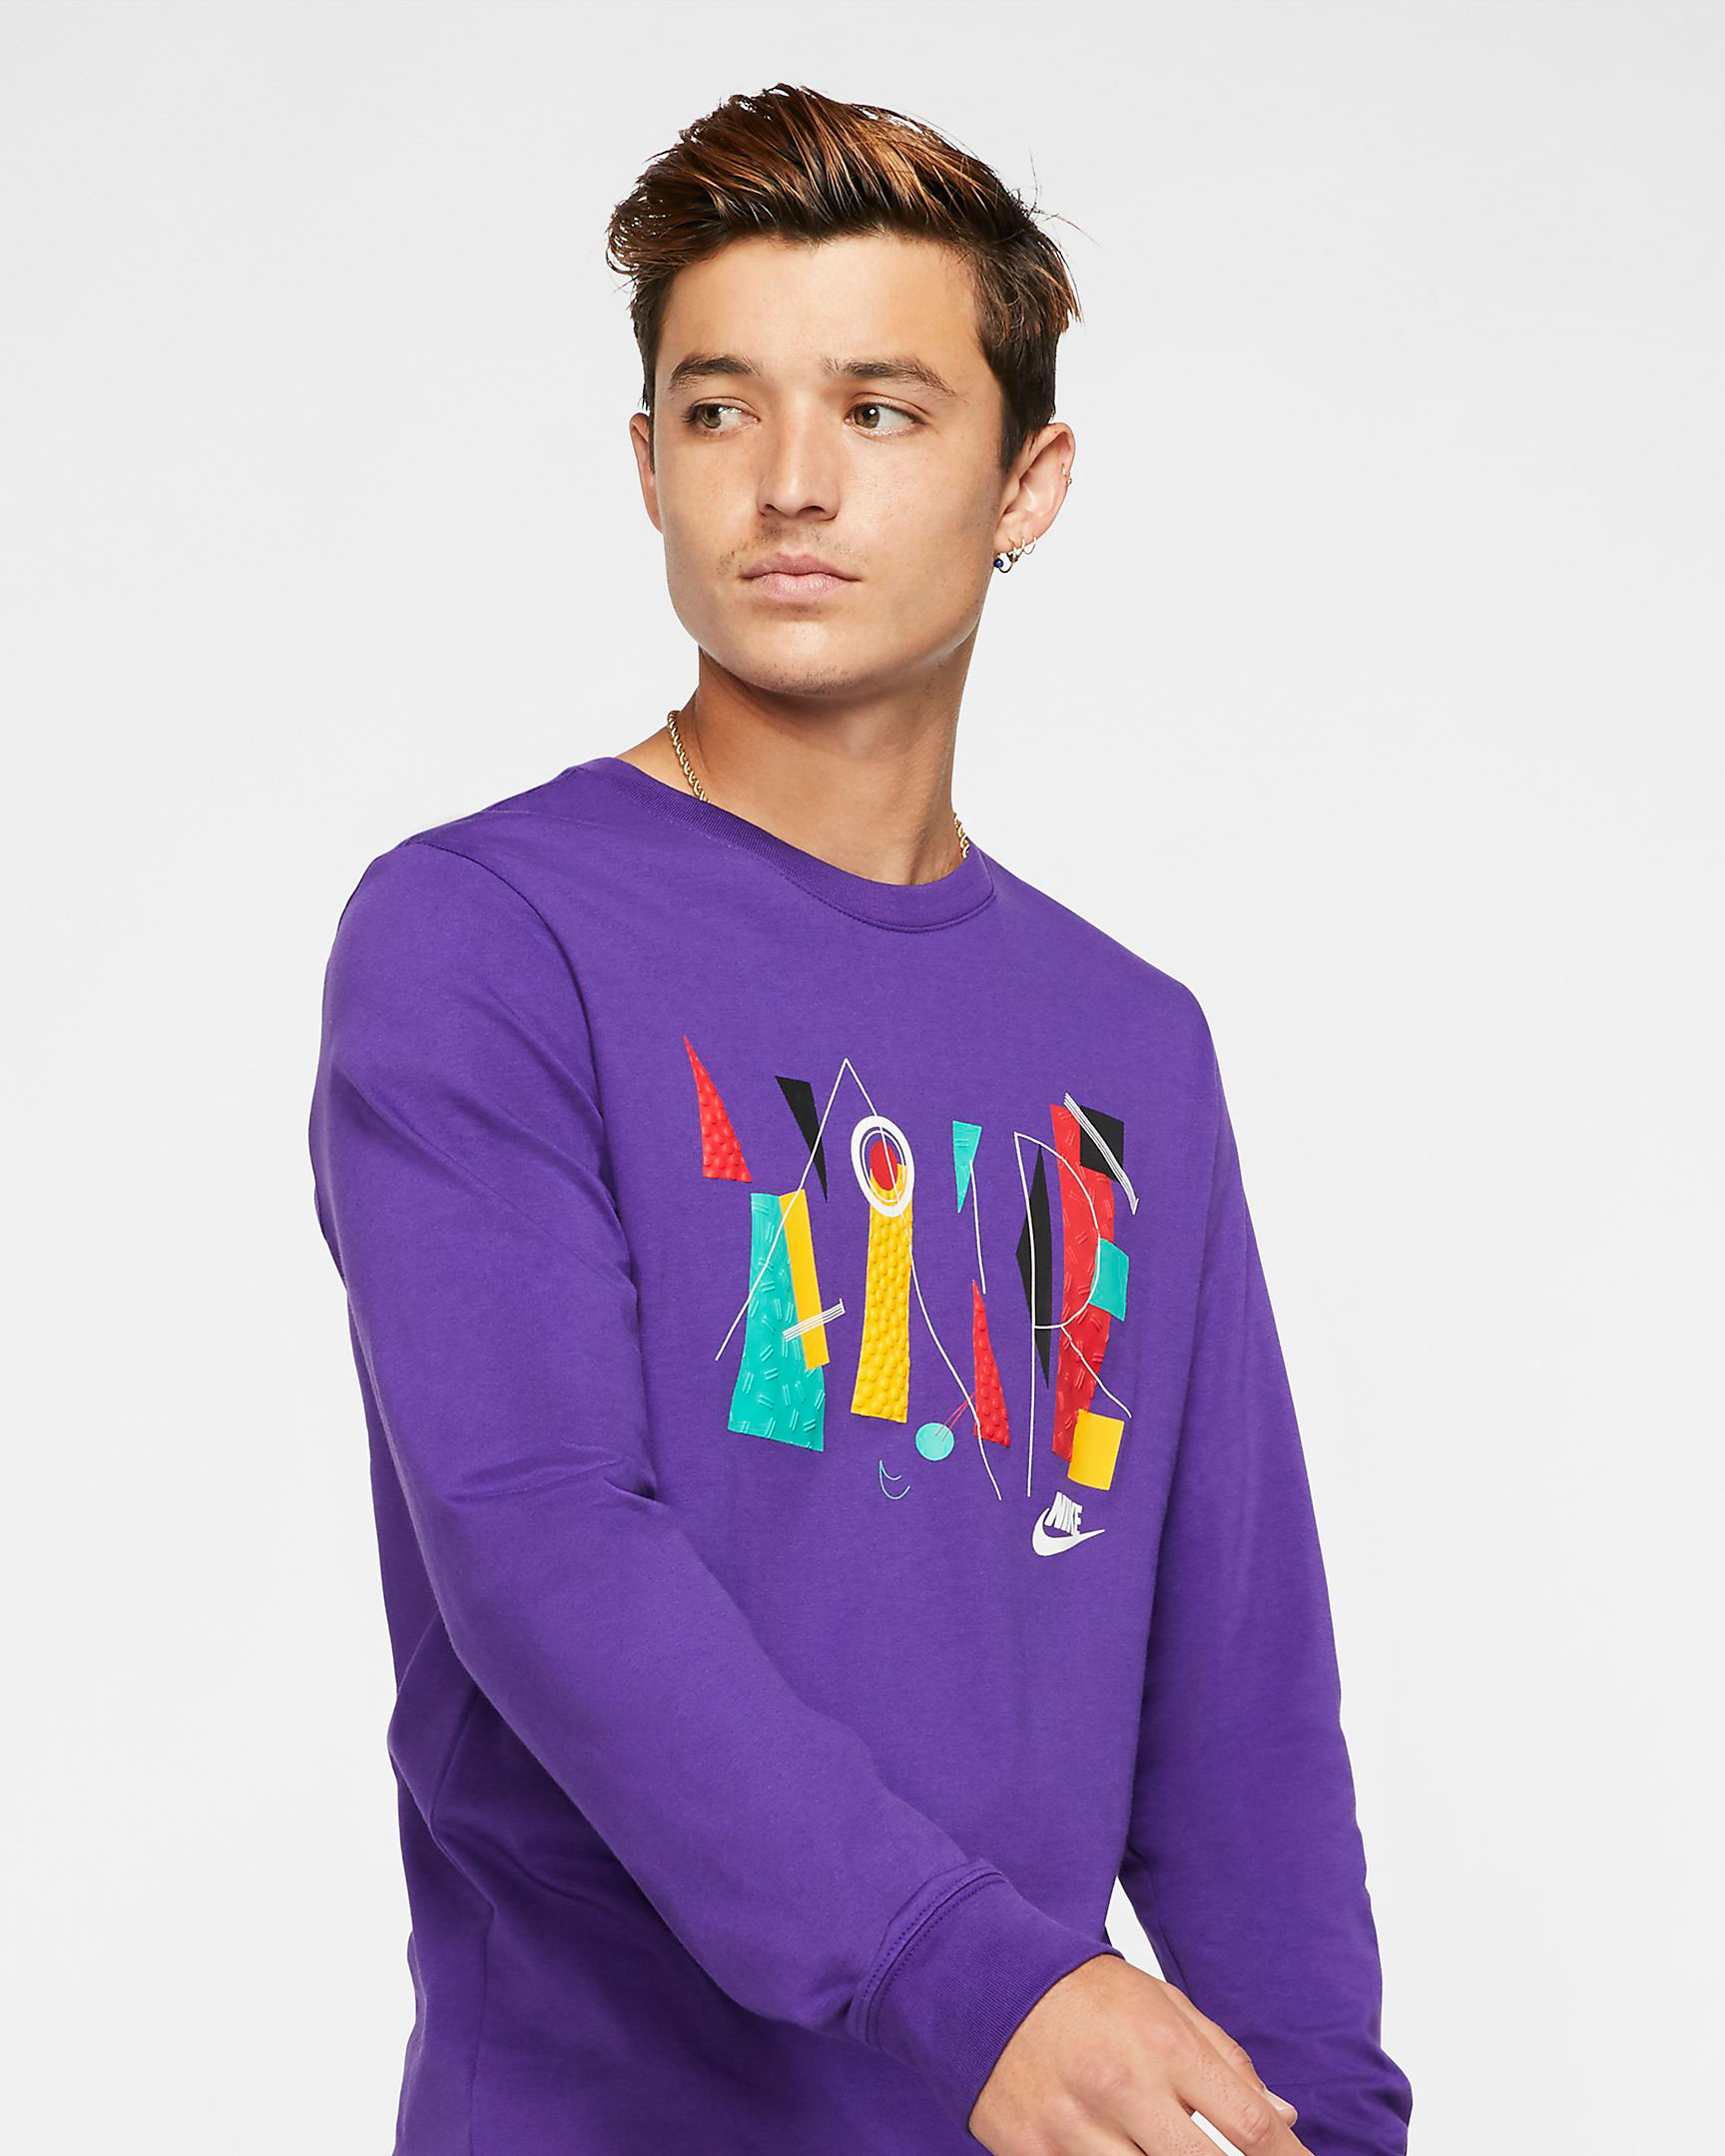 nike-game-changer-shirt-purple-2